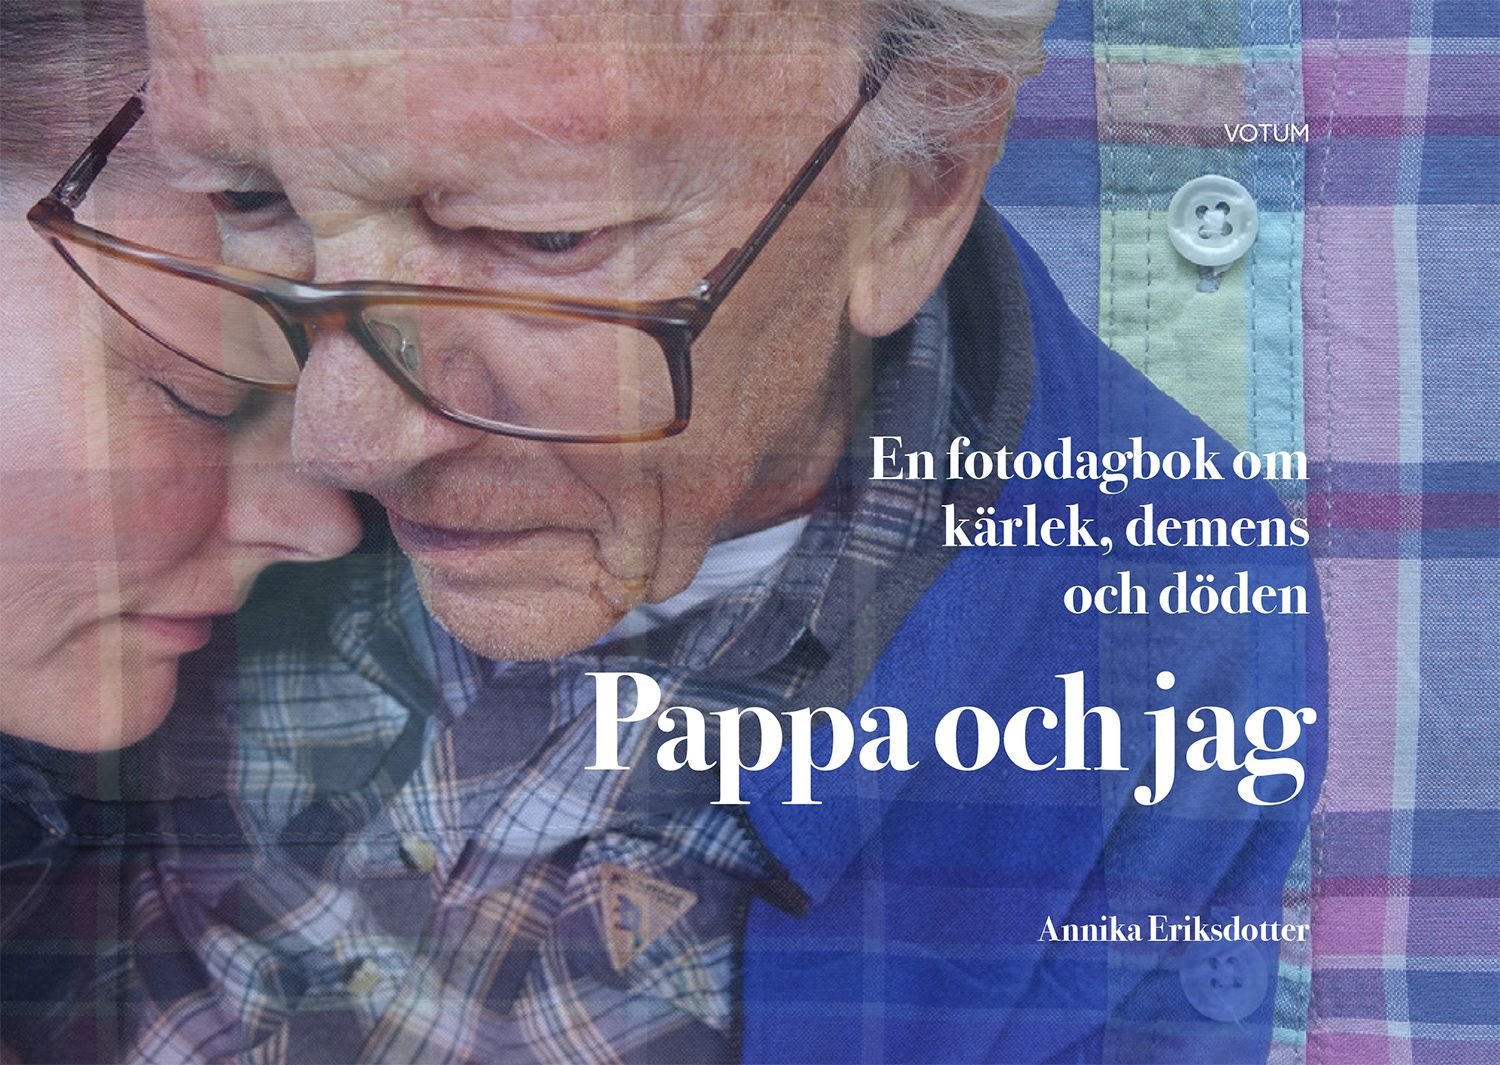 Pappa och jag: en fotodagbok om kärlek, demens och döden, eBook by Annika Eriksdotter